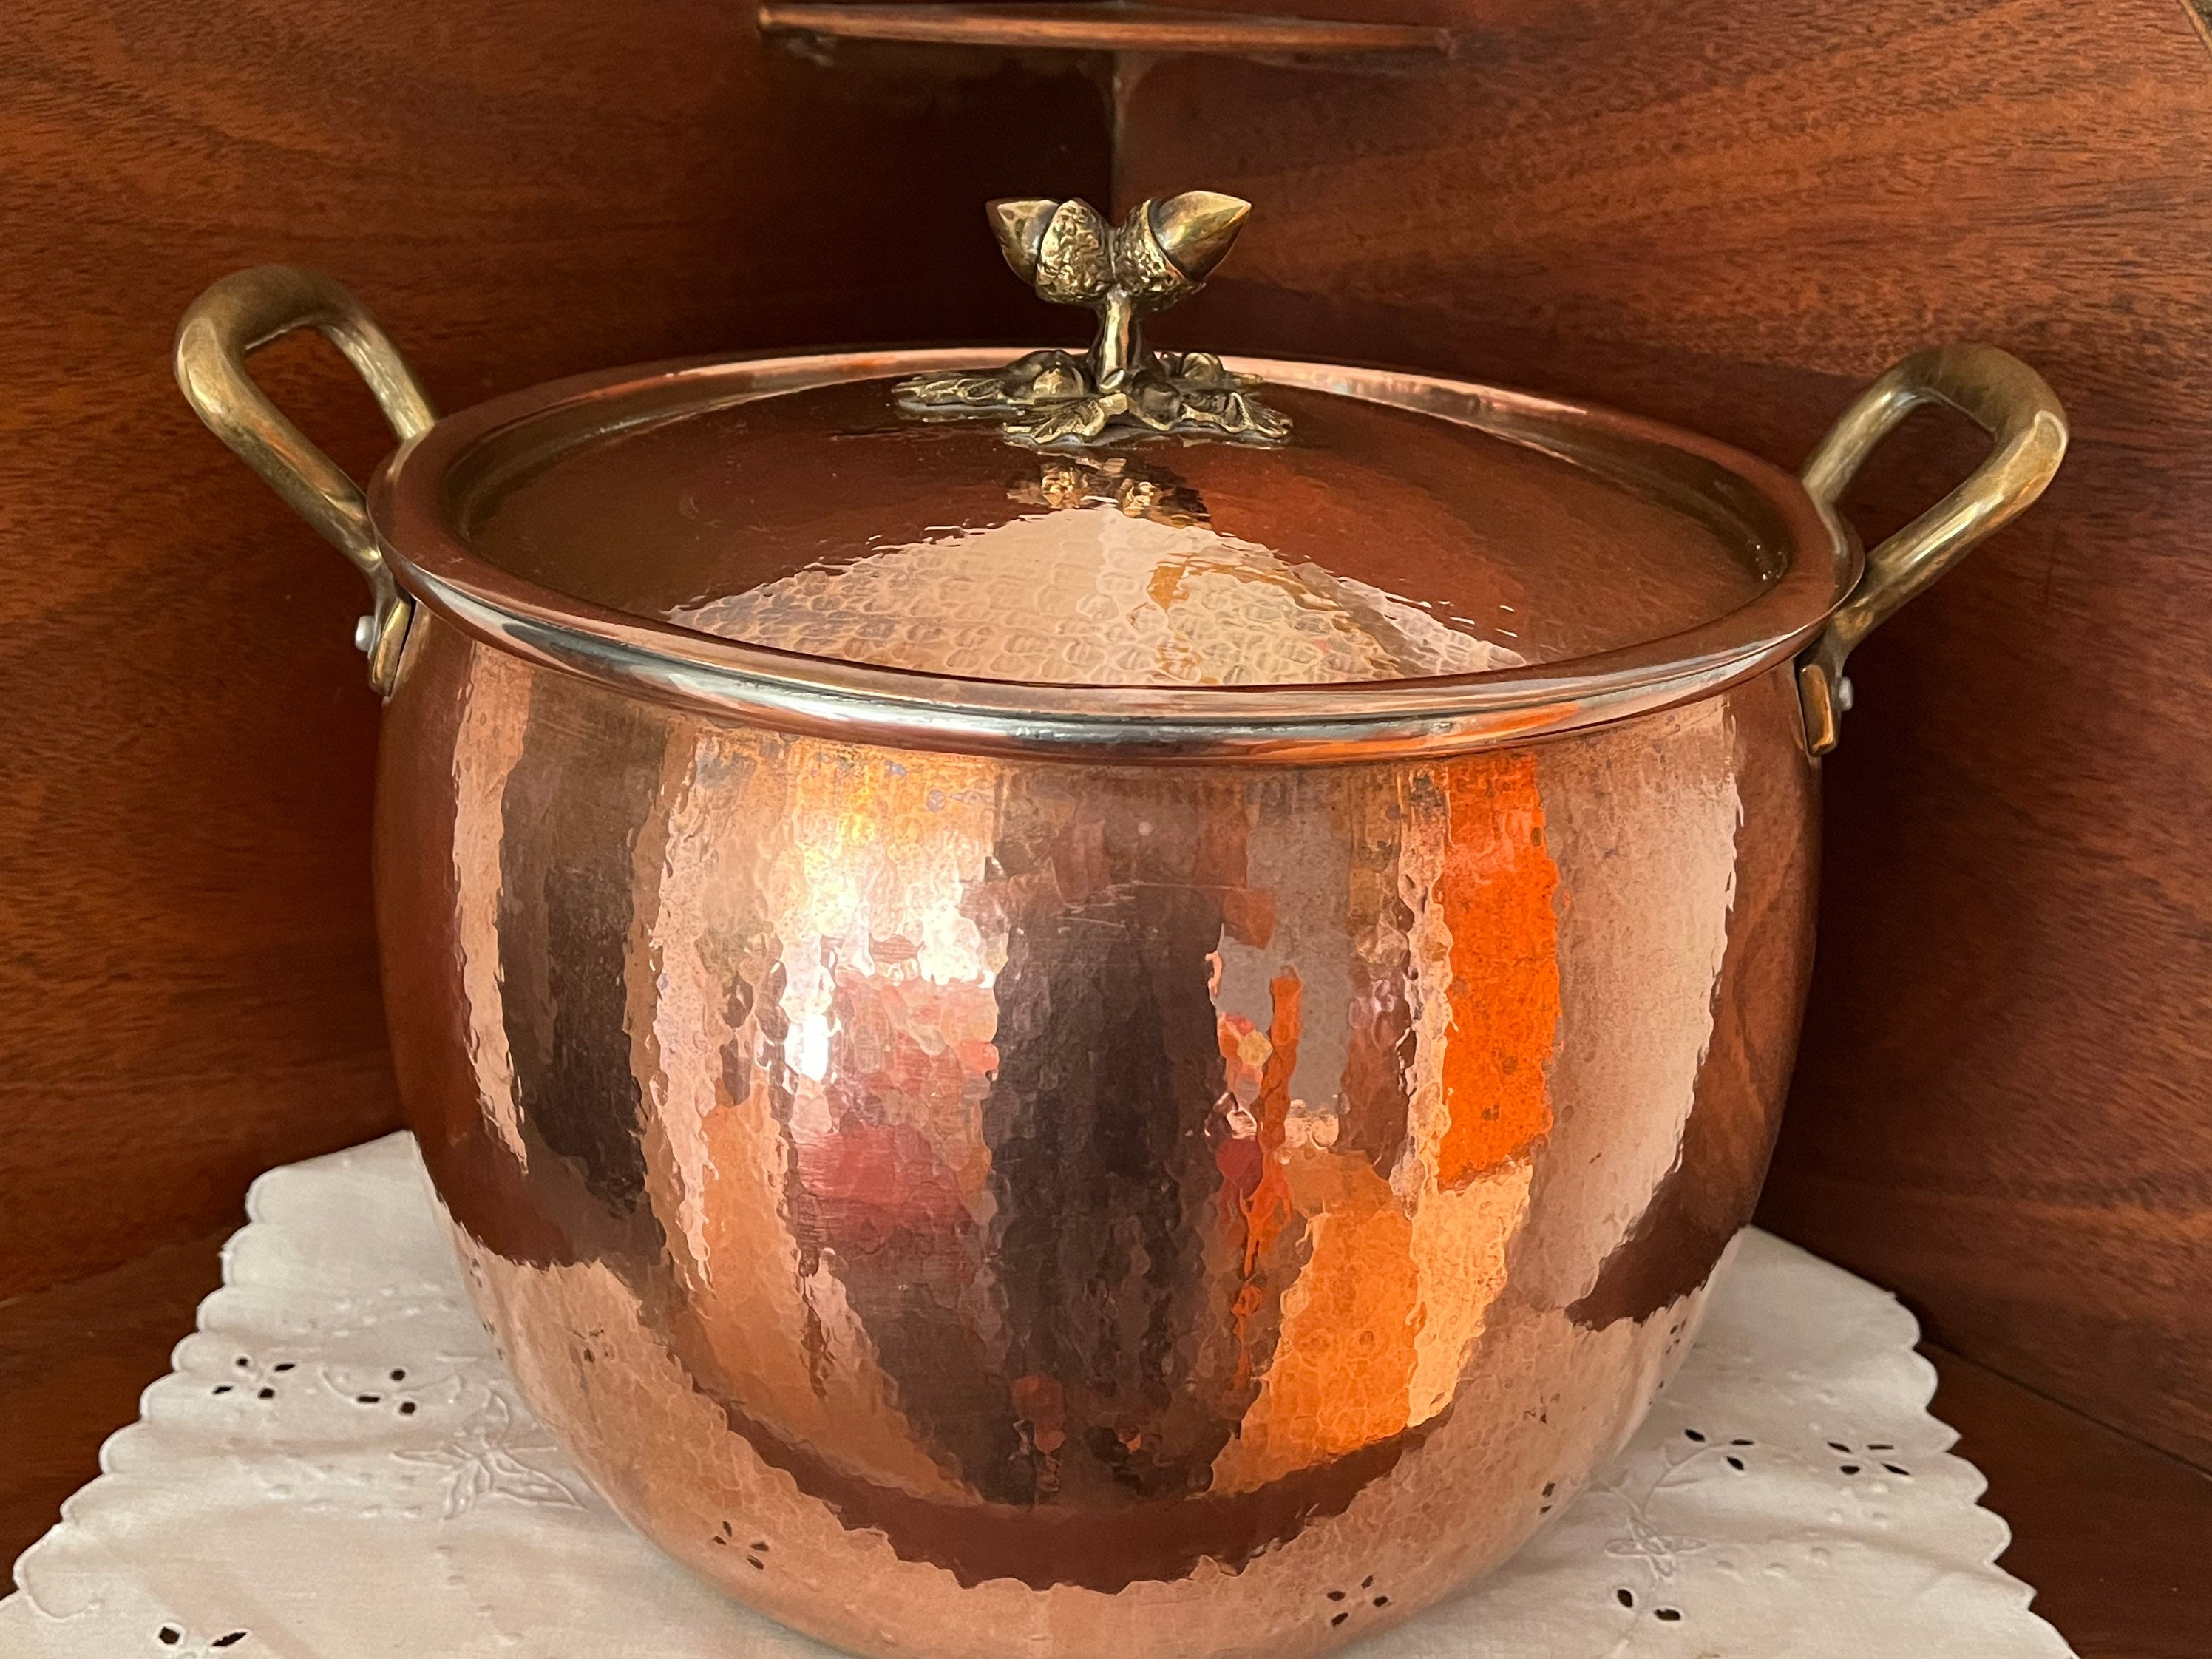 Pure Copper Soup Bucket Commercial Thick Soup Pot Pure Copper Handmade Soup  Pot Large-Capacity Household Extra-Thick Soup Large Copper Pot (2525